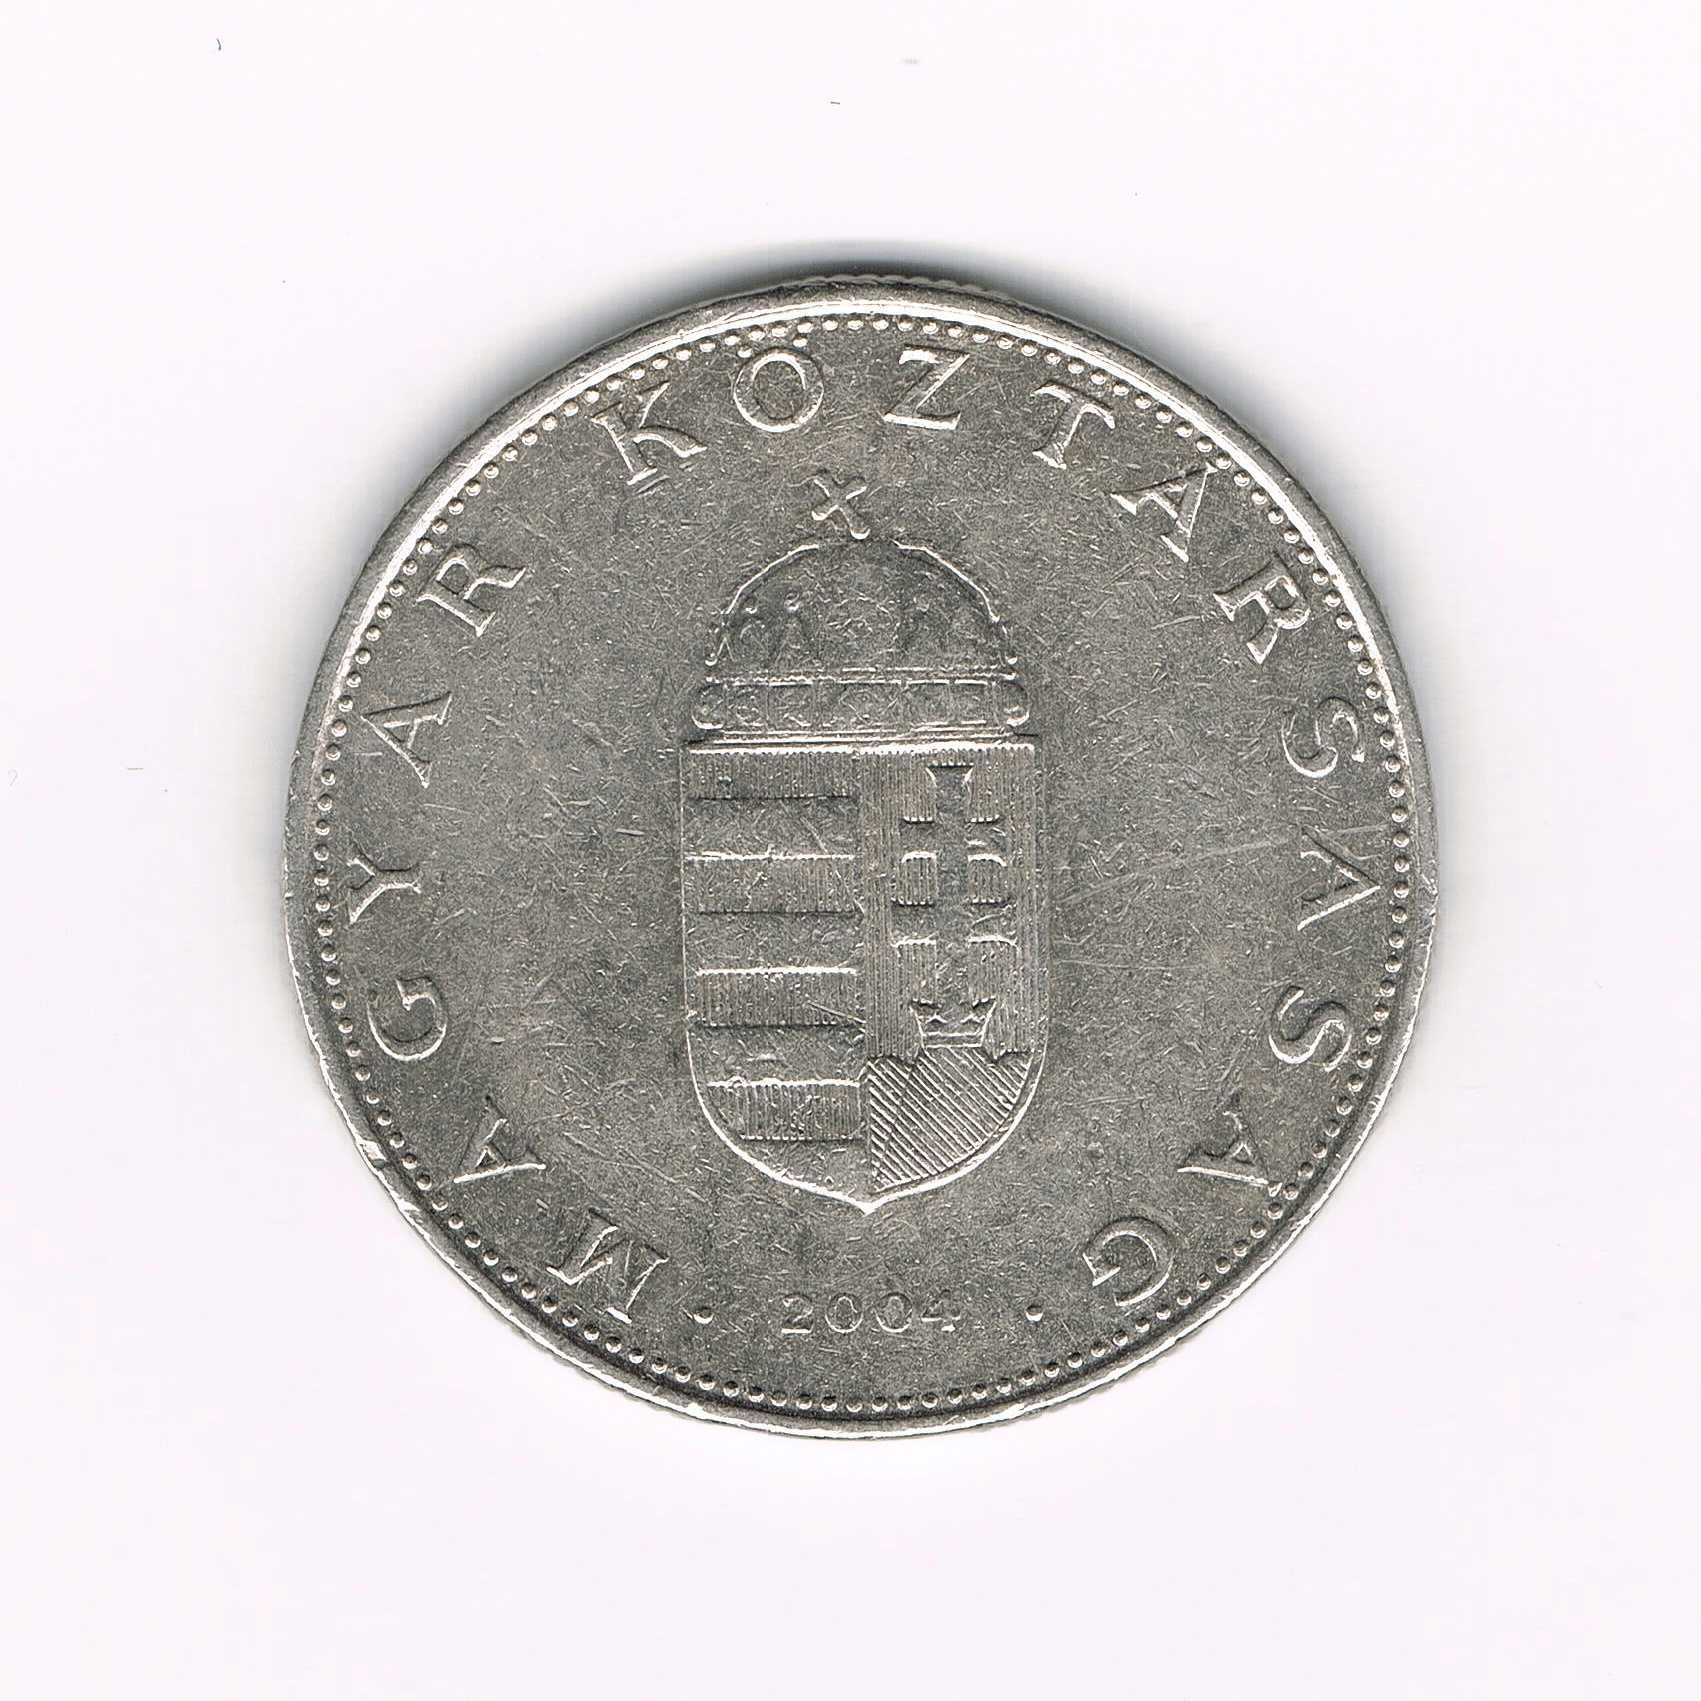 Moneta węgierska - 10 forintów - 2004 rok